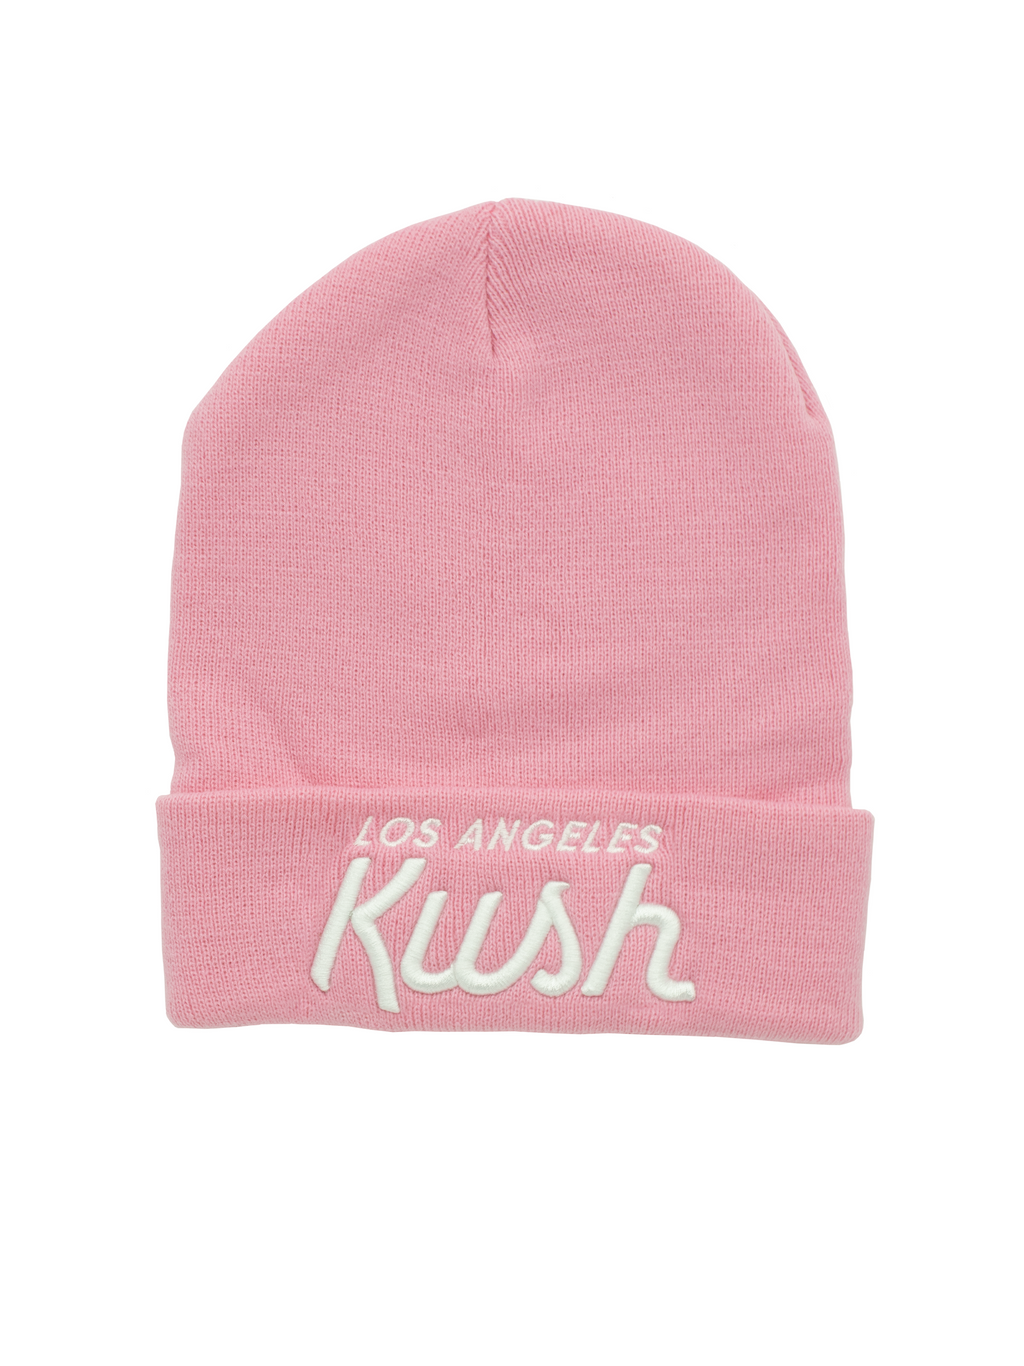 LA Kush OG Beanie - Pink/White